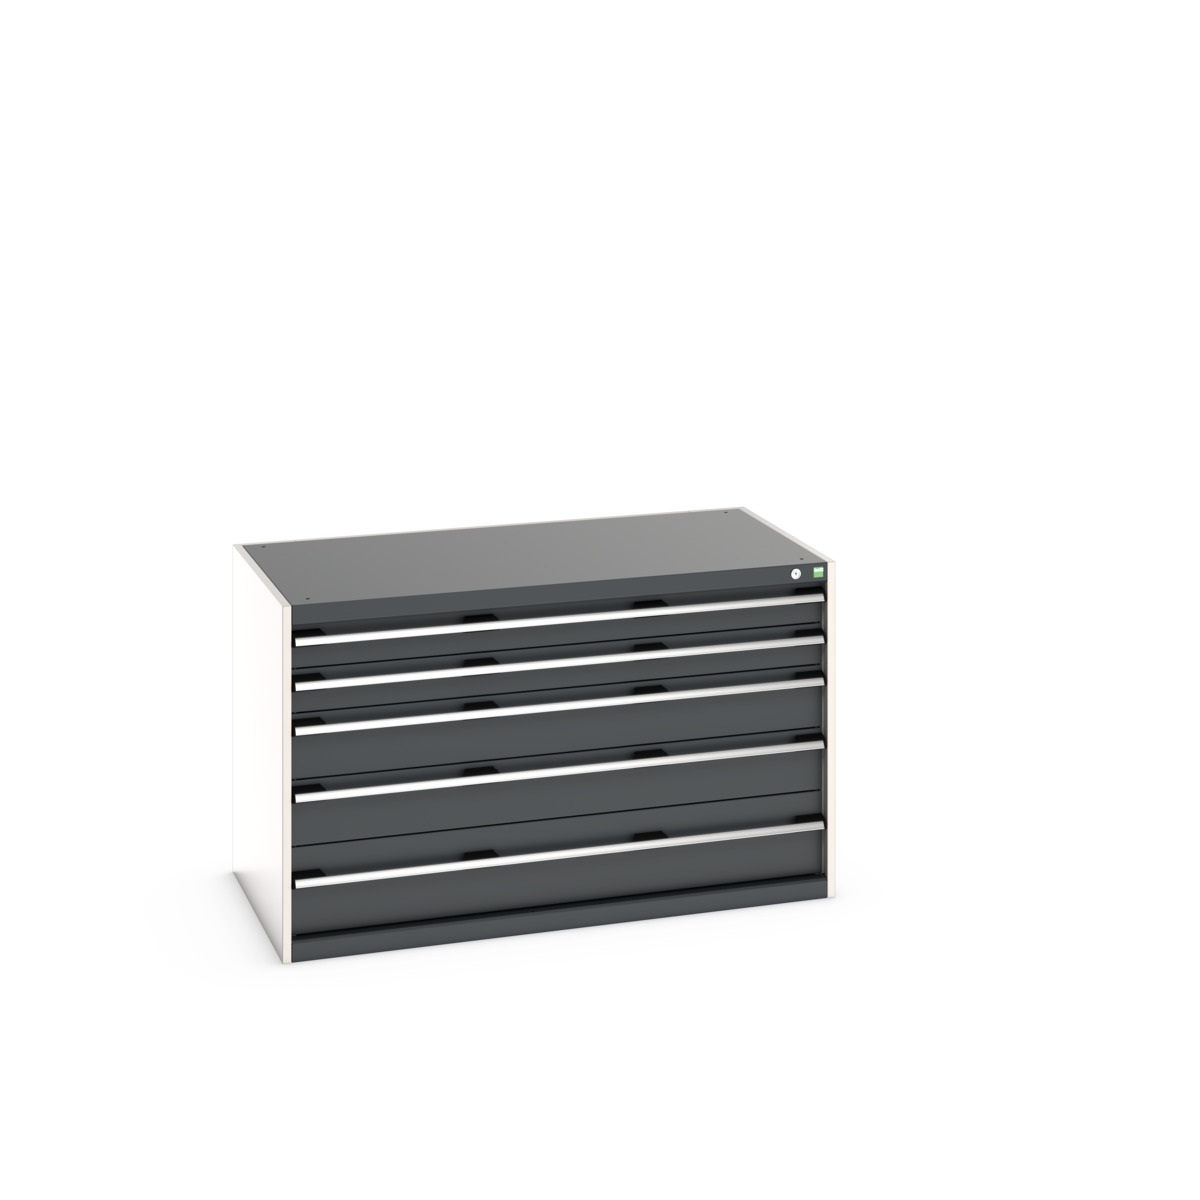 40030008.19V - cubio drawer cabinet